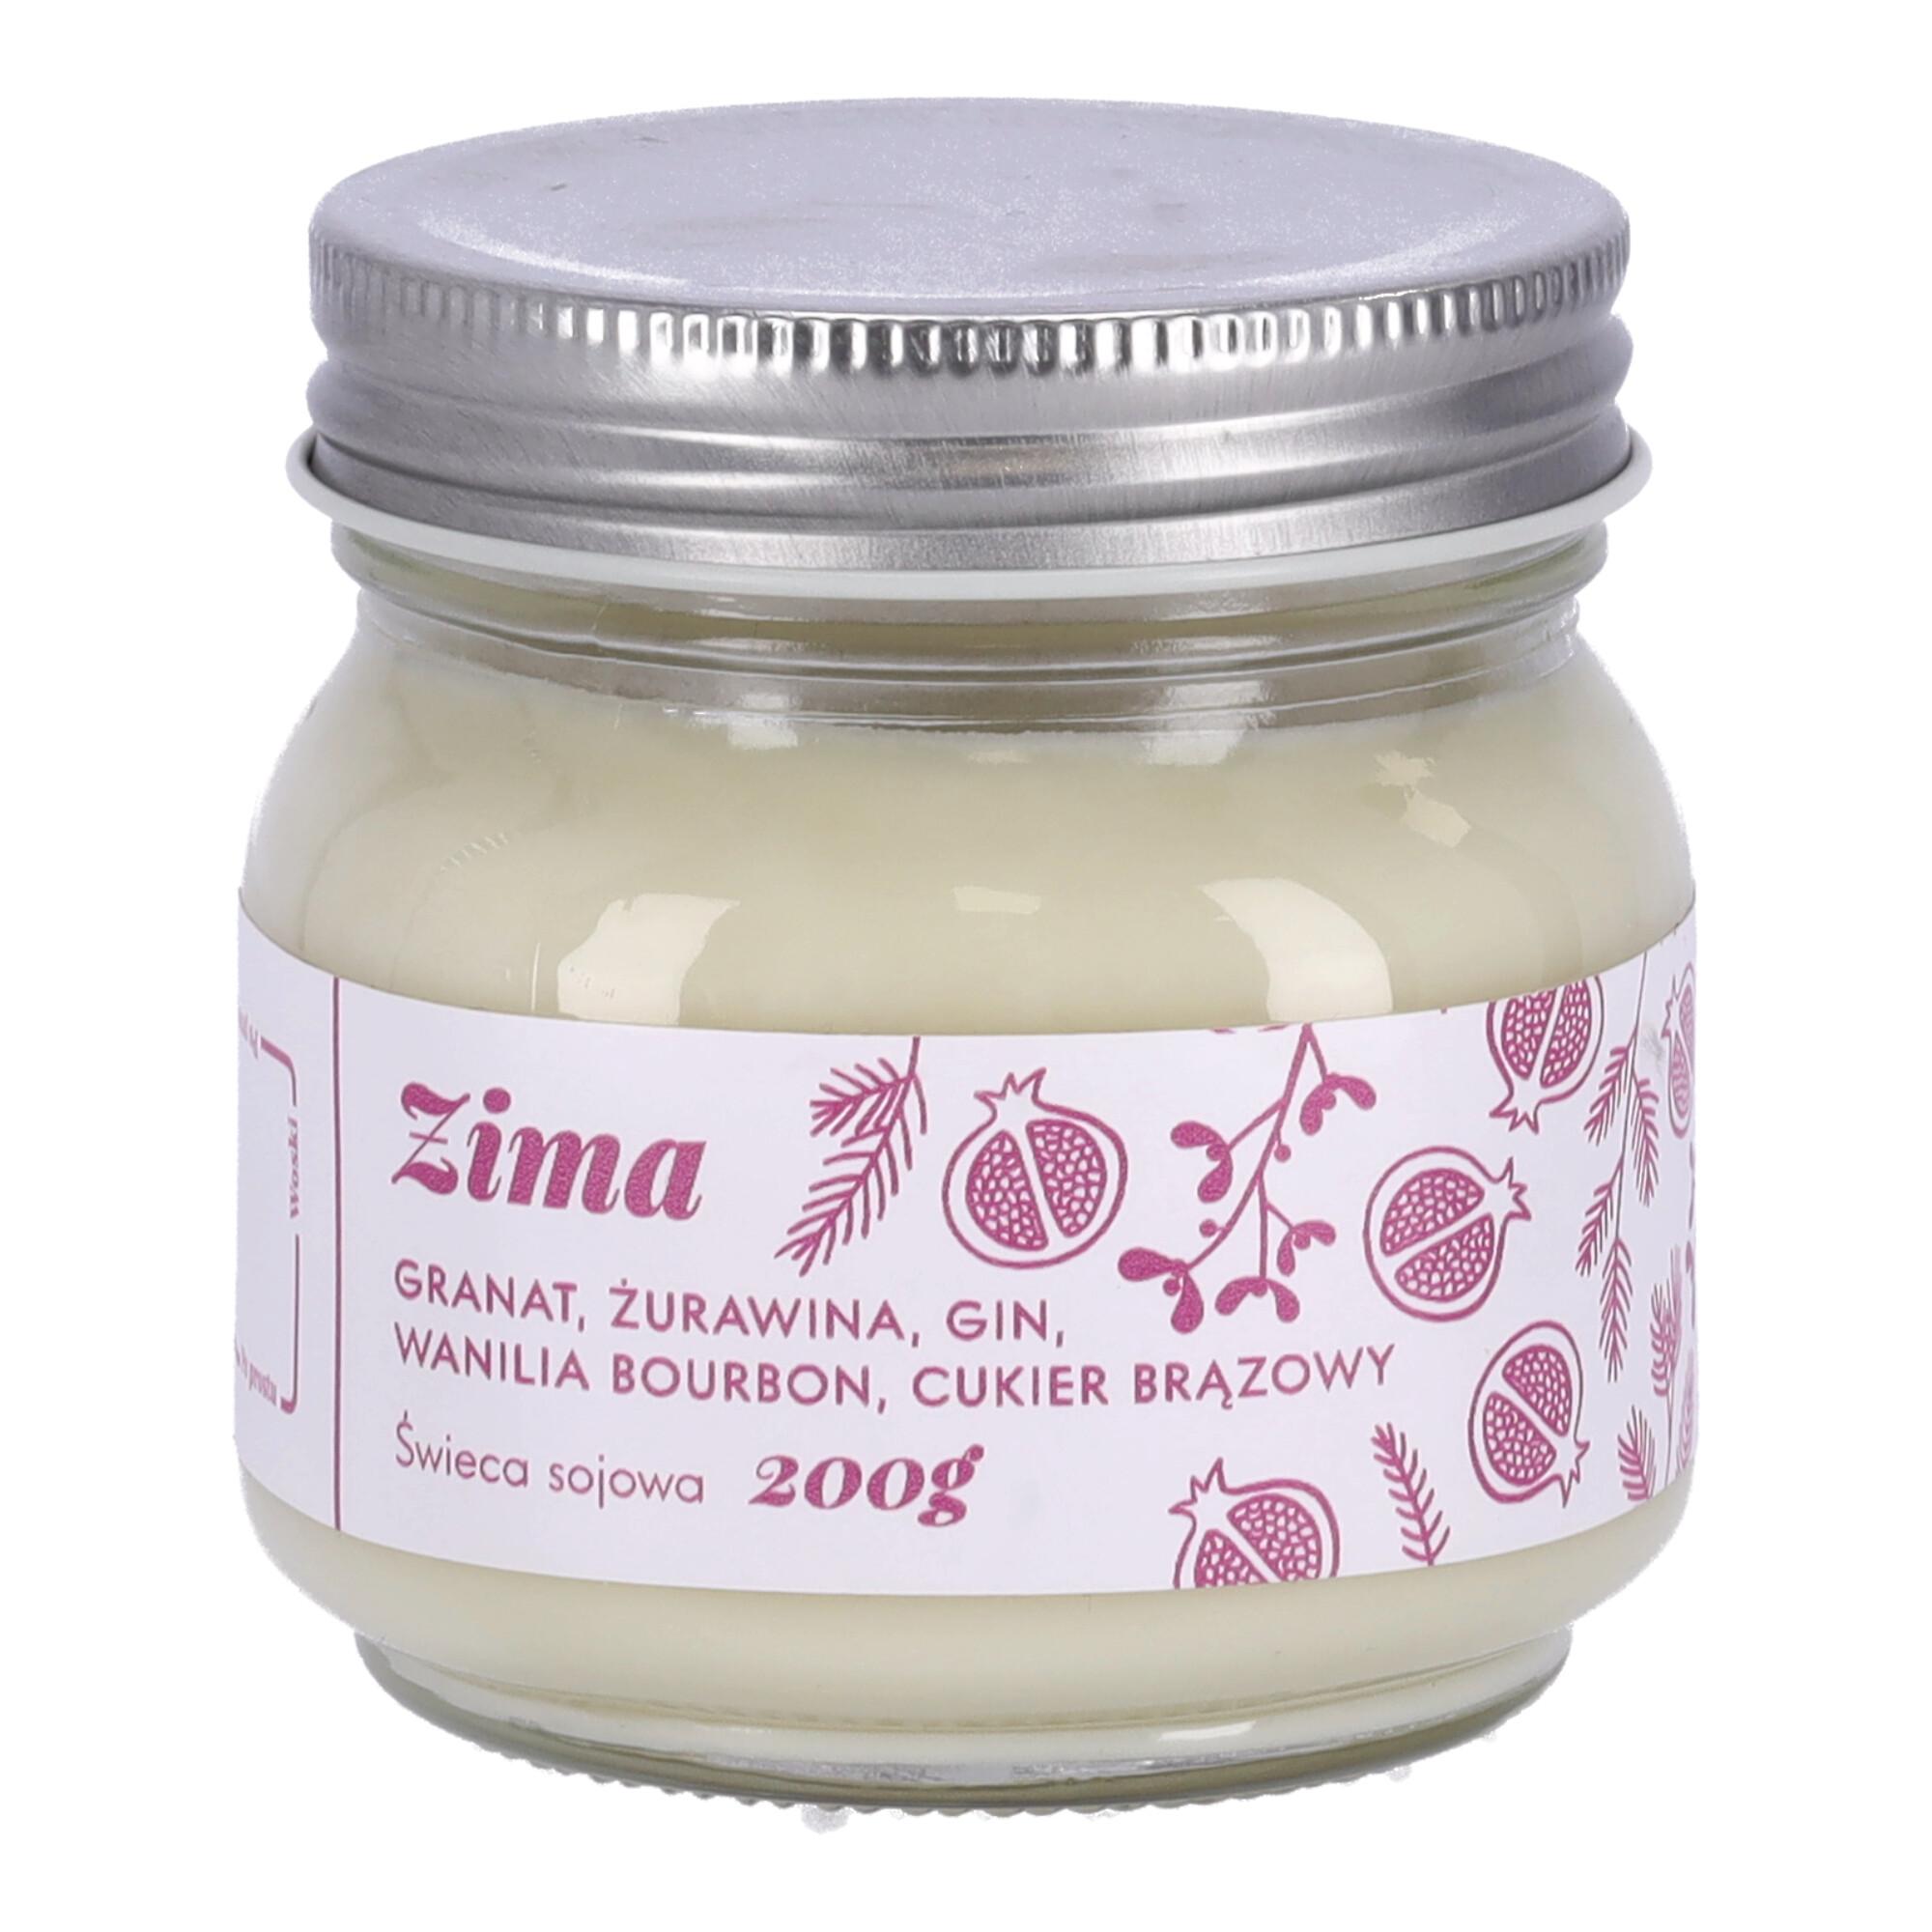 Zapachowa świeca Premium - Zima / Polski produkt